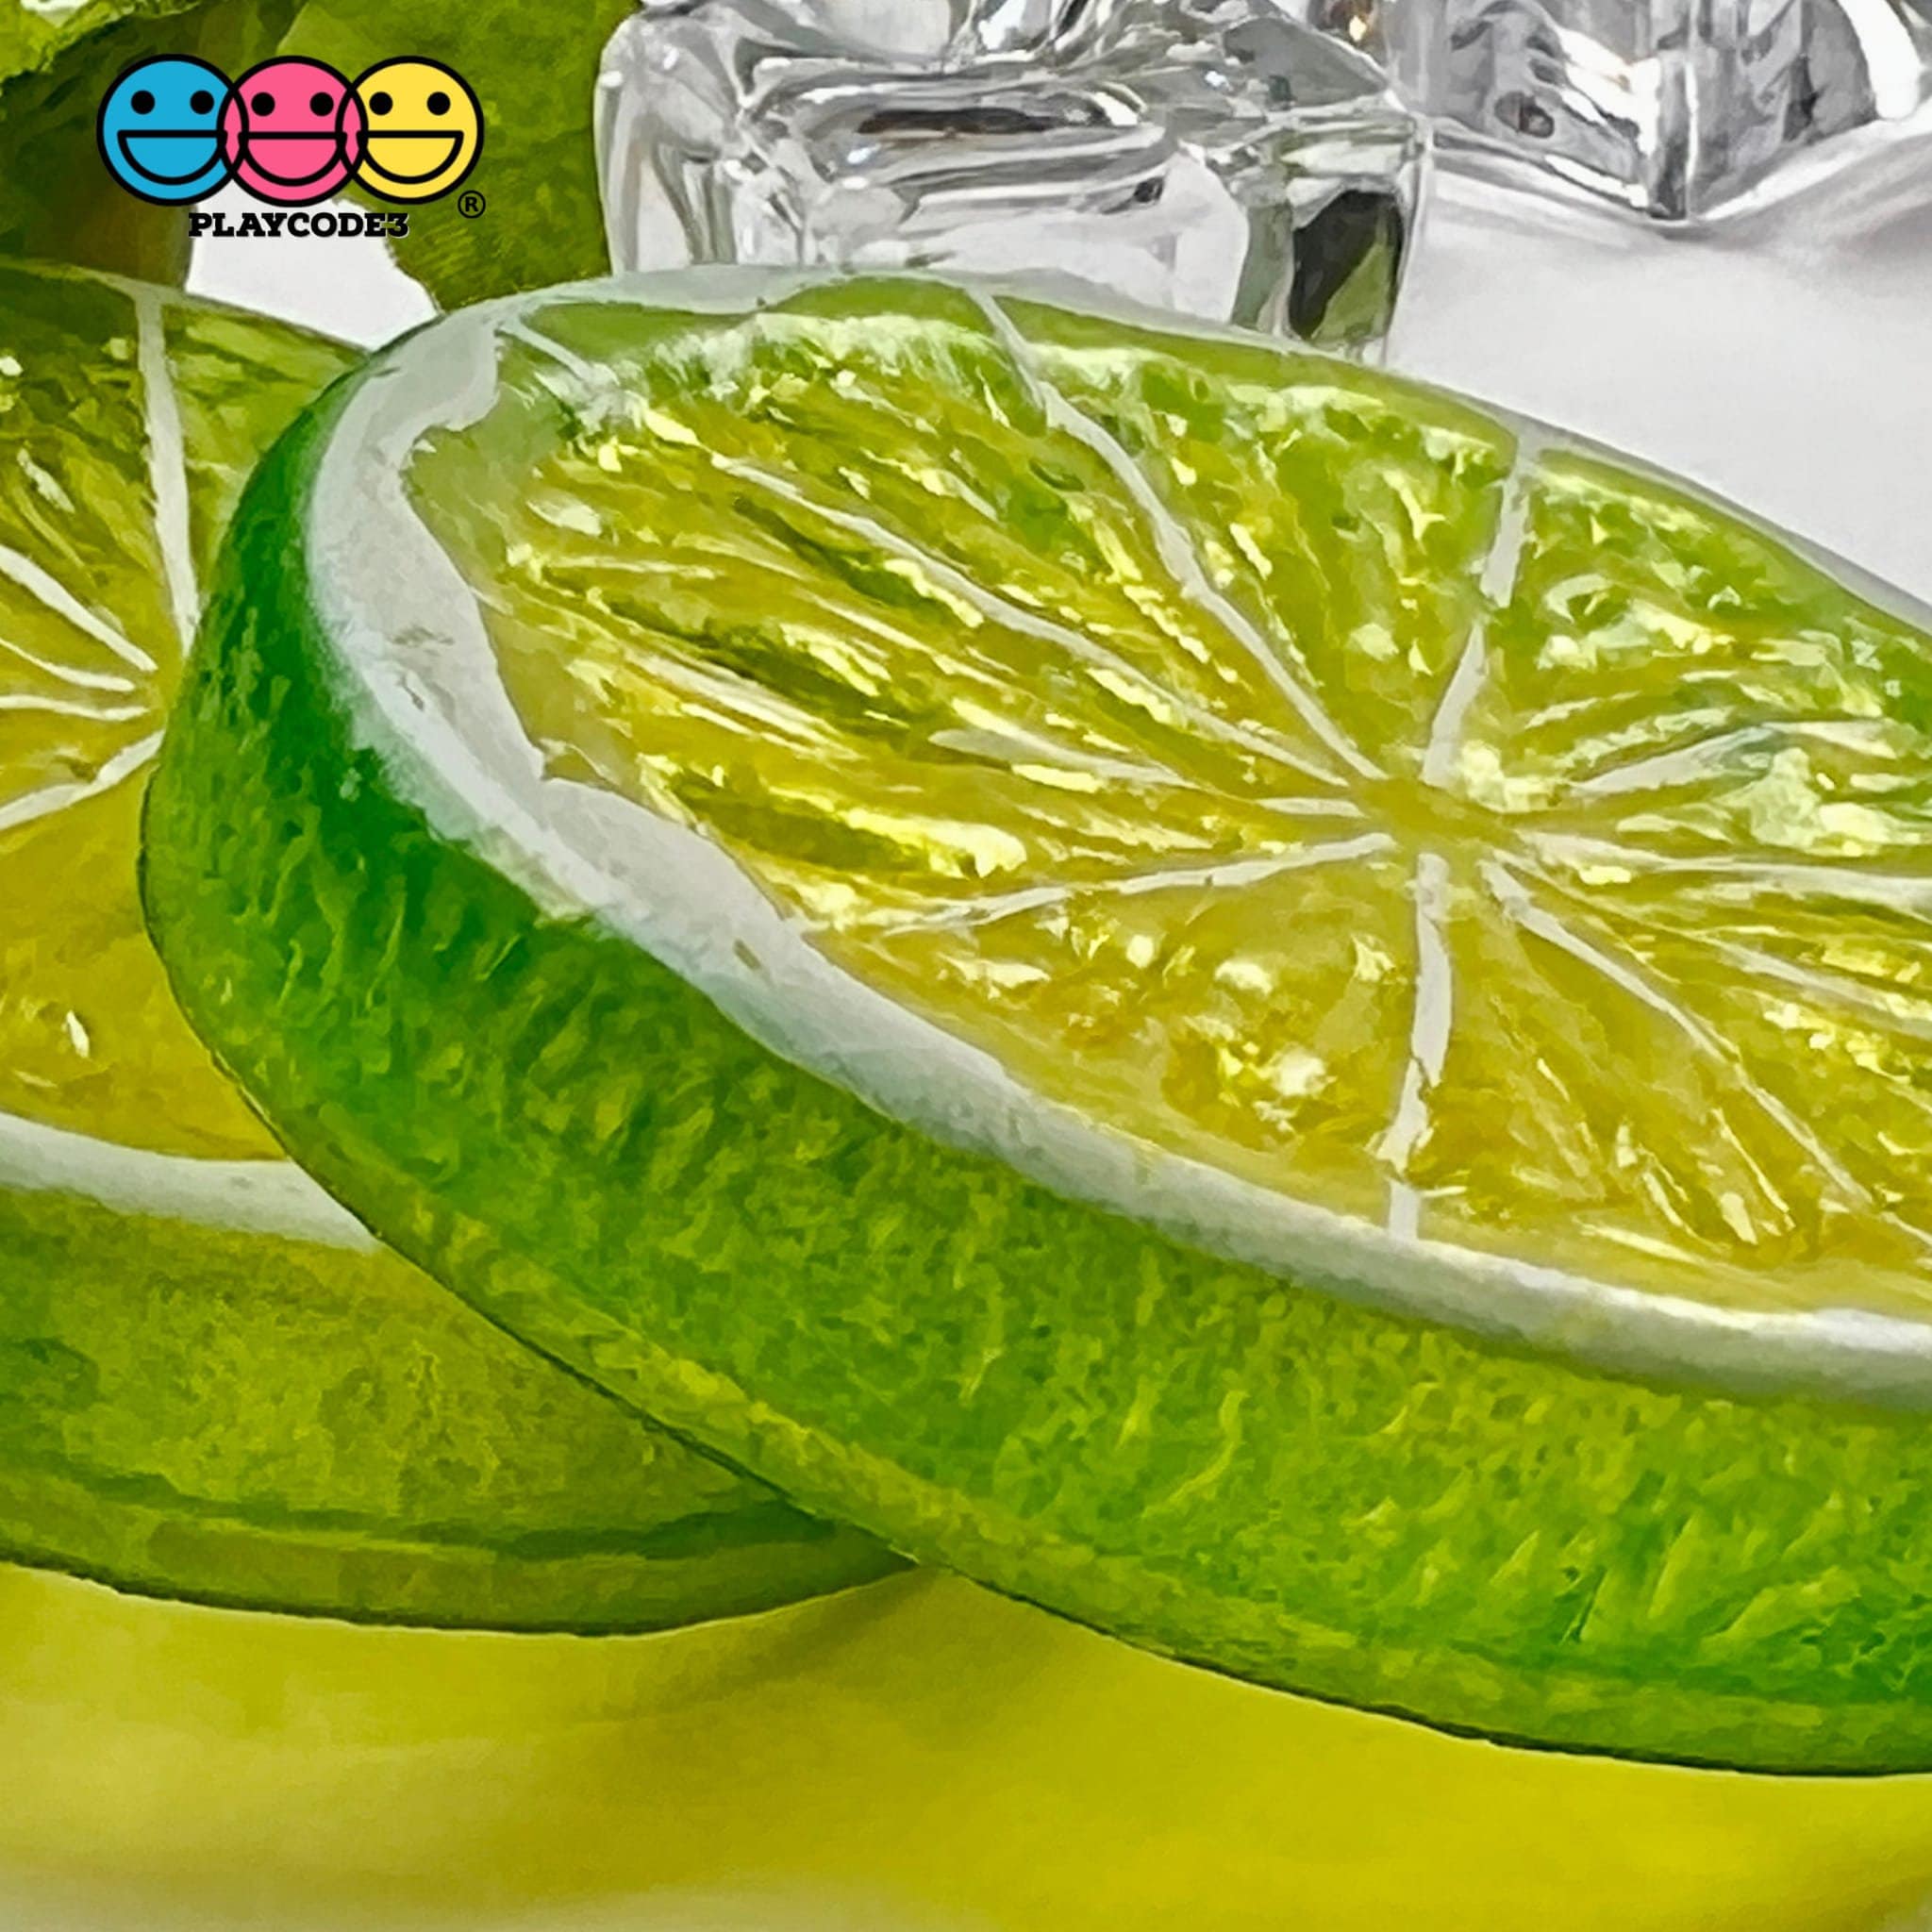 Slice Fruit Charms Orange Lemon Lime Slices Decoden Fake Food